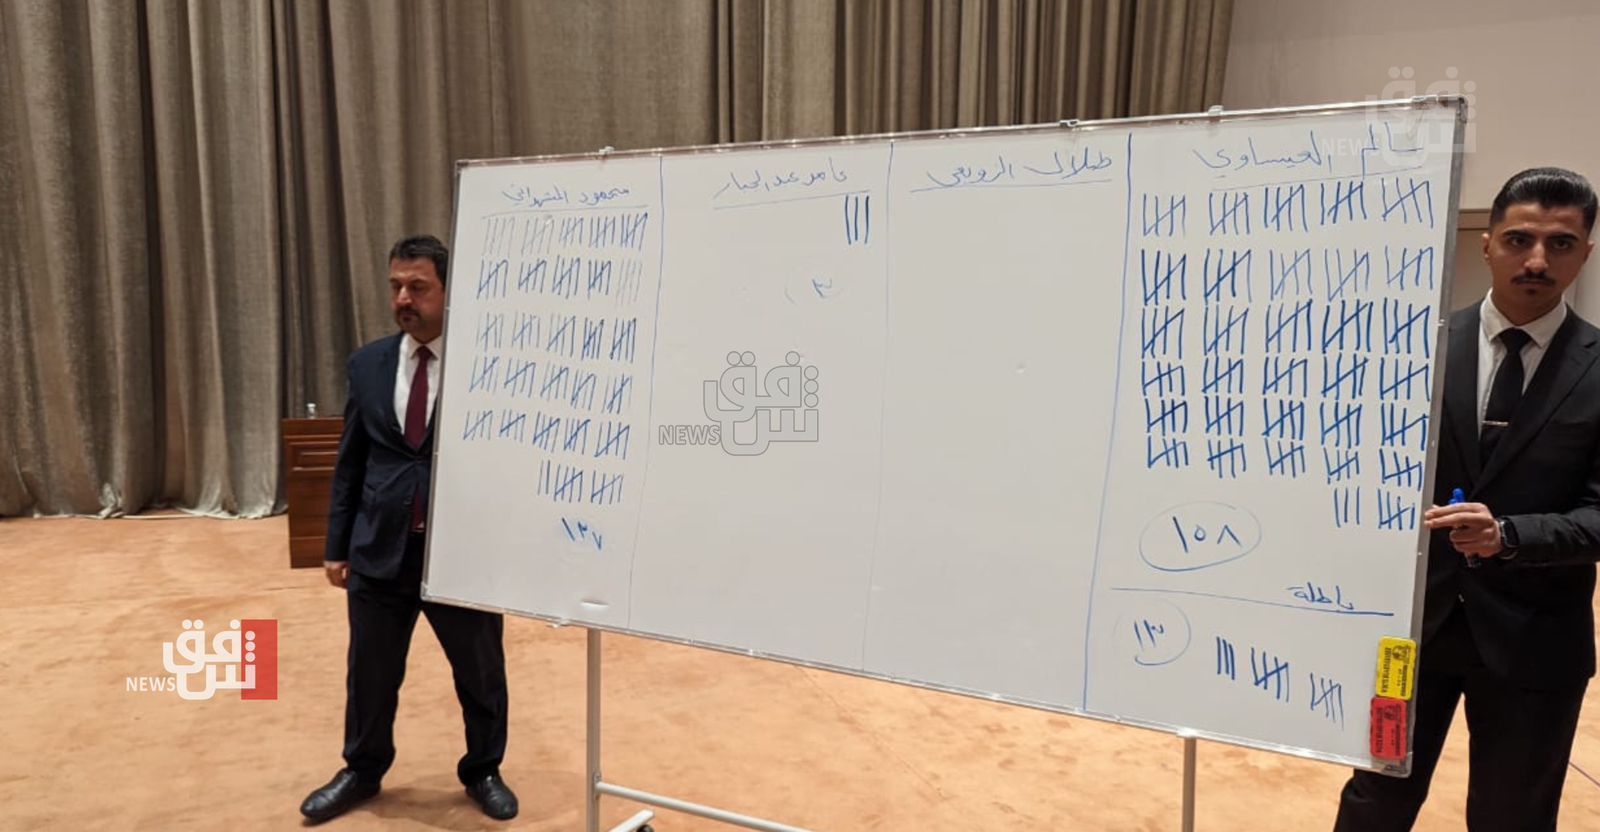 المشهداني يطالب بلجنة تحقيق بجلسة انتخاب رئيس البرلمان ويتحدث عن "خطأ" الفرز